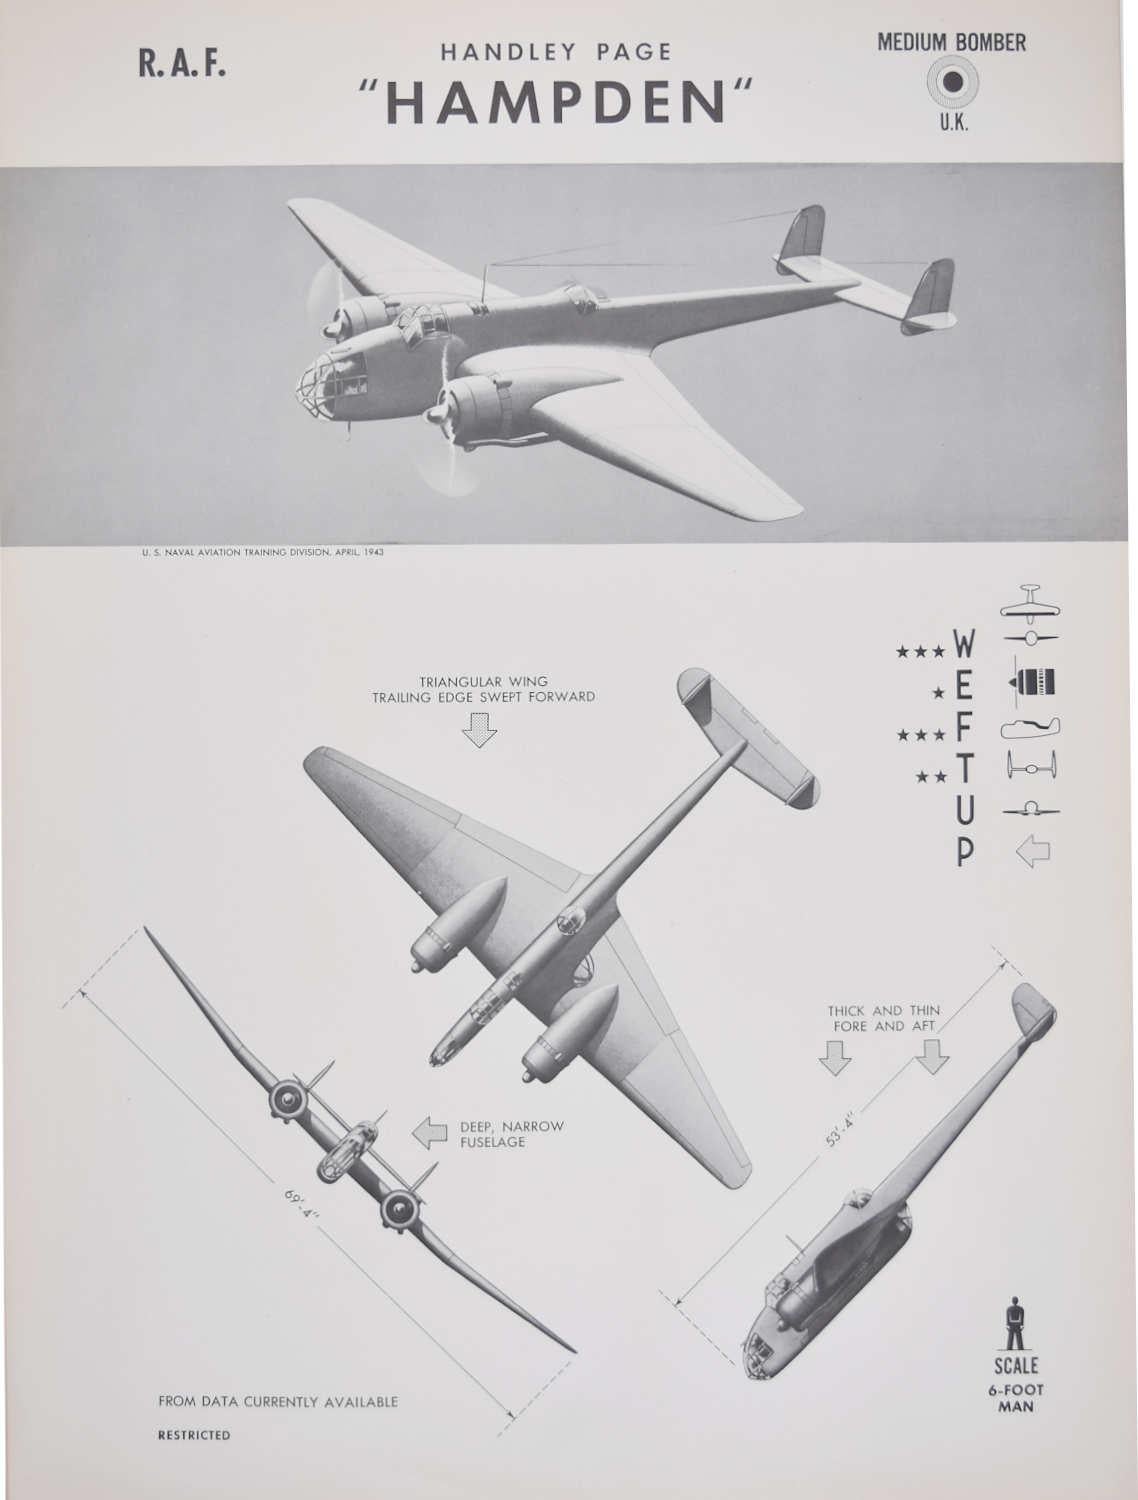 Affiche d'identification d'avions bombardiers « Hampton » de la RAF Handley Page de 1942, ww2 - Print de Unknown